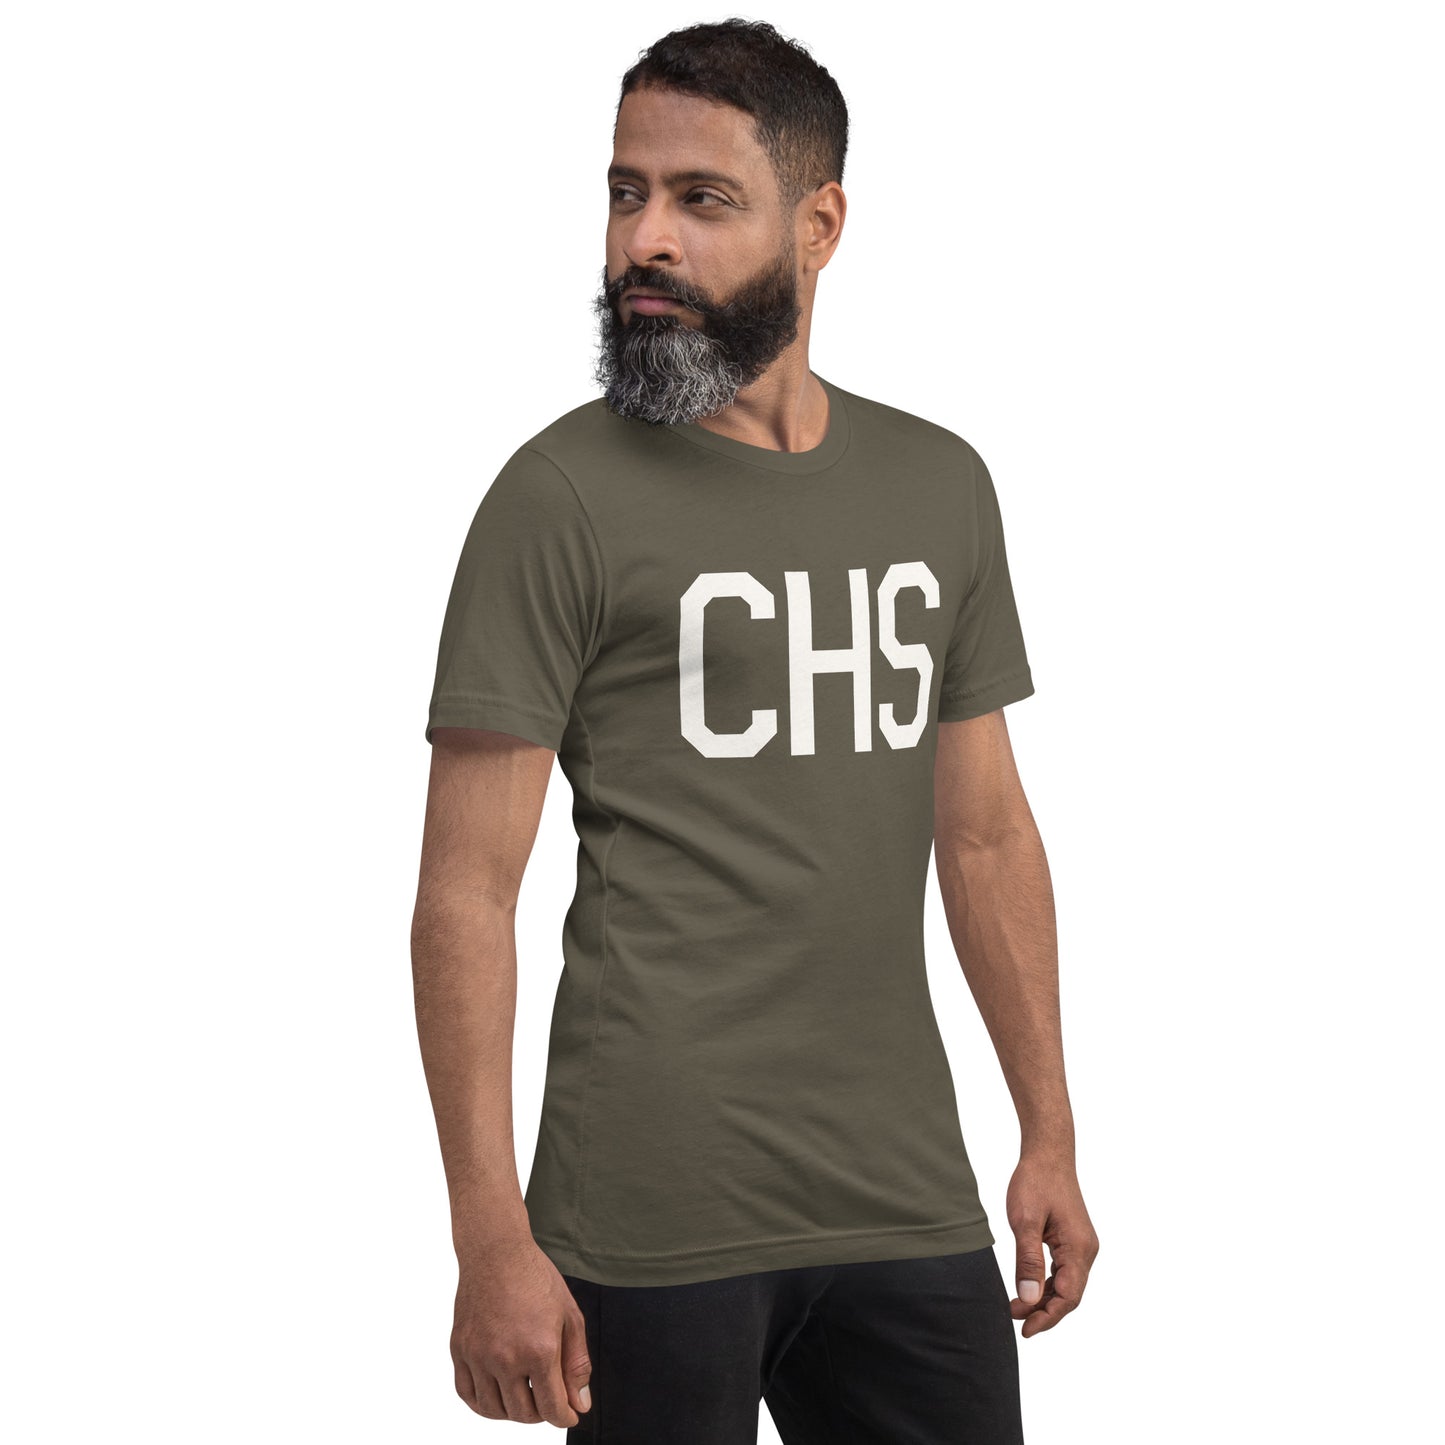 Airport Code T-Shirt - White Graphic • CHS Charleston • YHM Designs - Image 06